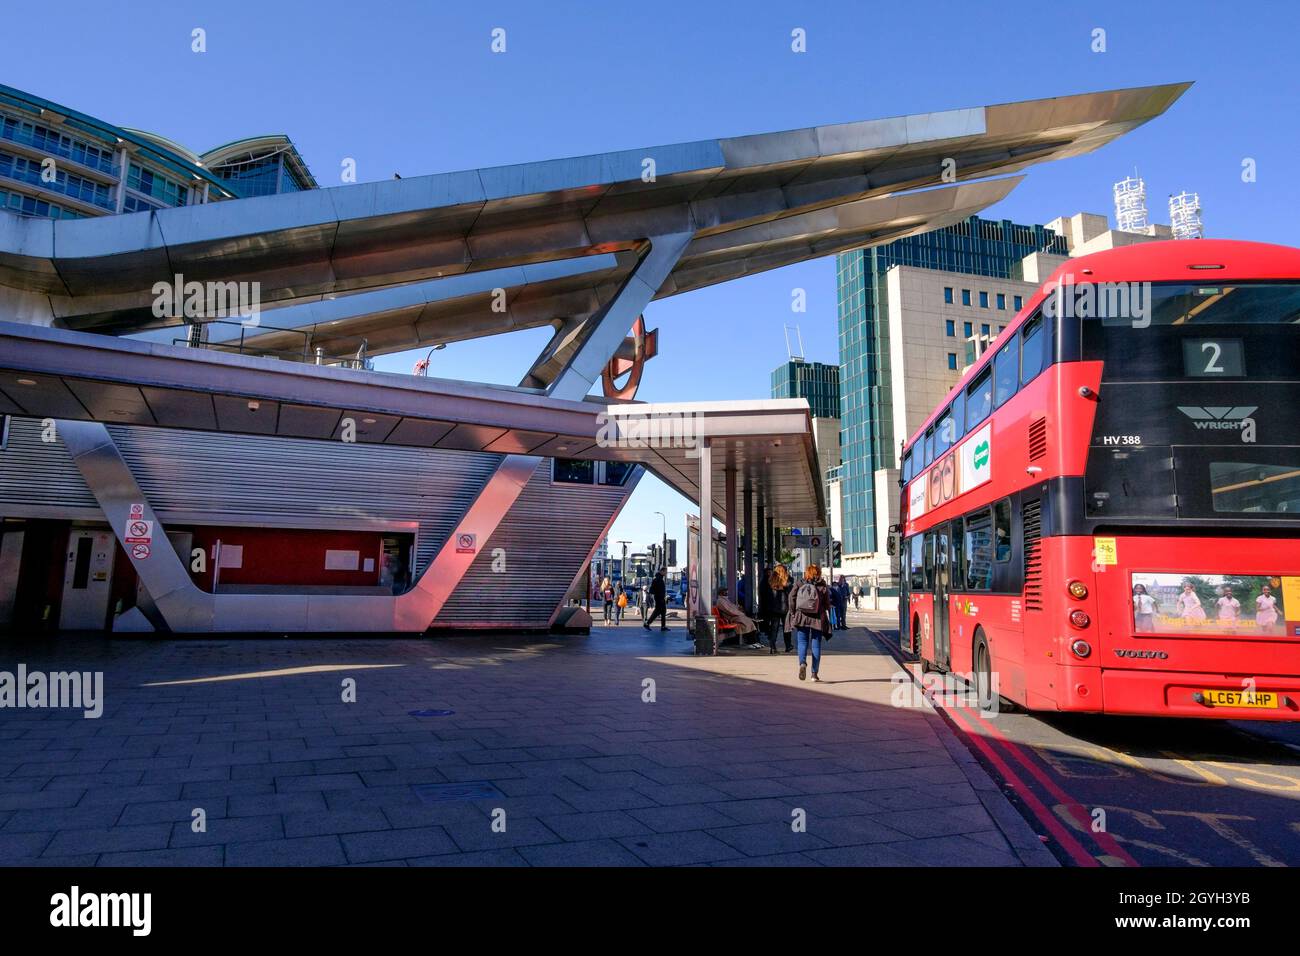 Vauxhall bus station, London, UK. Stock Photo